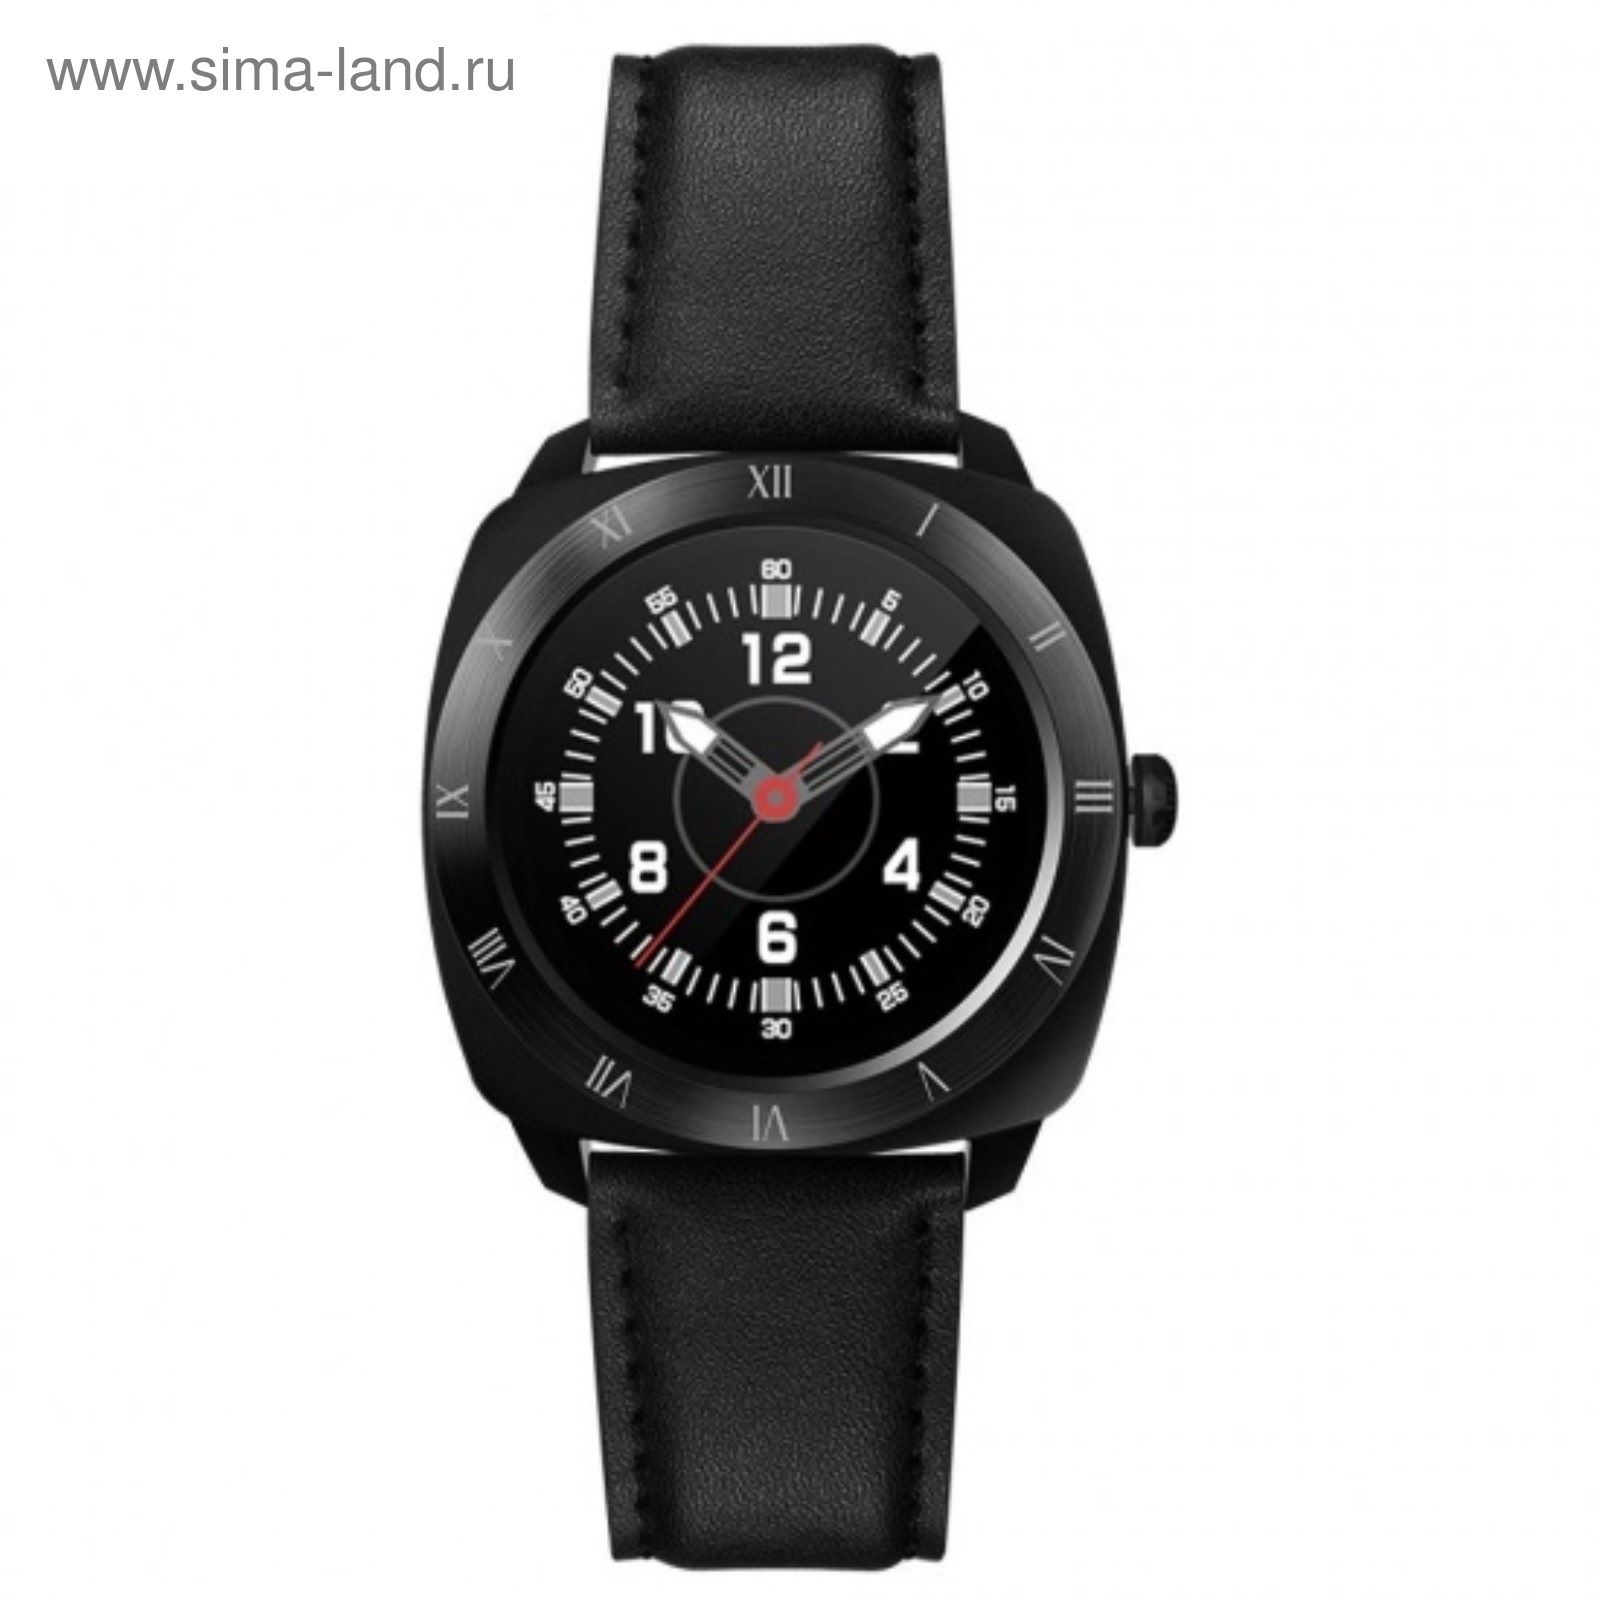 Умные часы Colmi VS70 Bluetooth черные